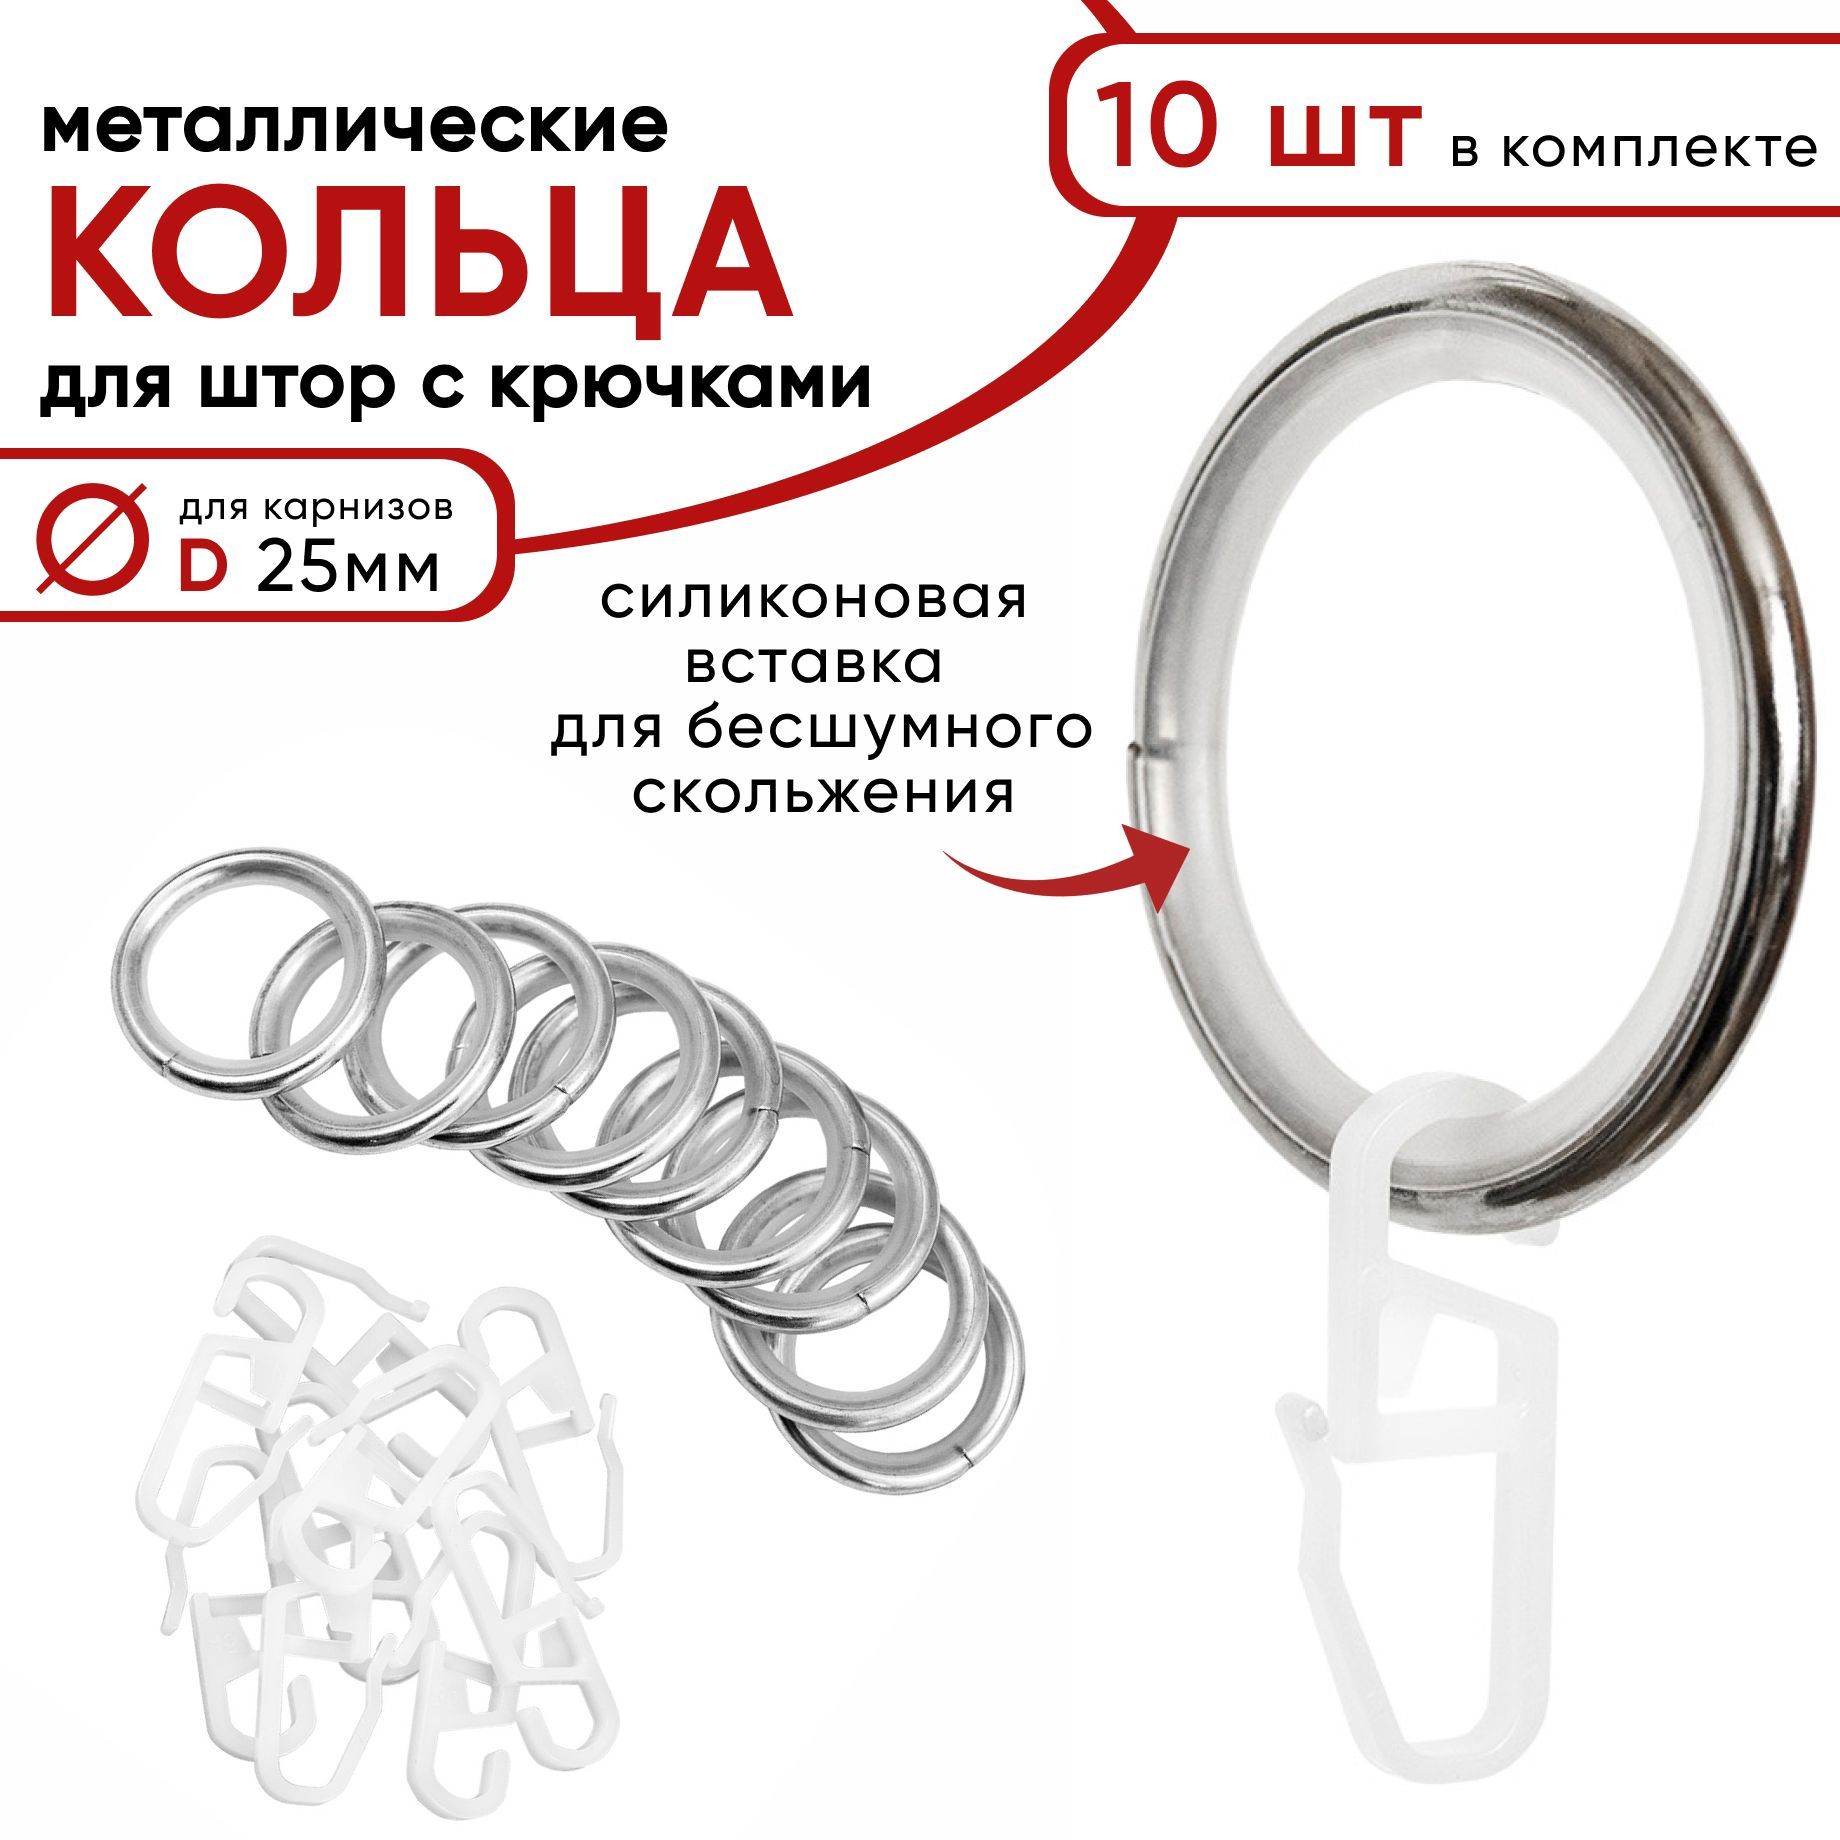 Металлические кольца для штор с крючками для карнизов D25 бесшумные хром 10 шт